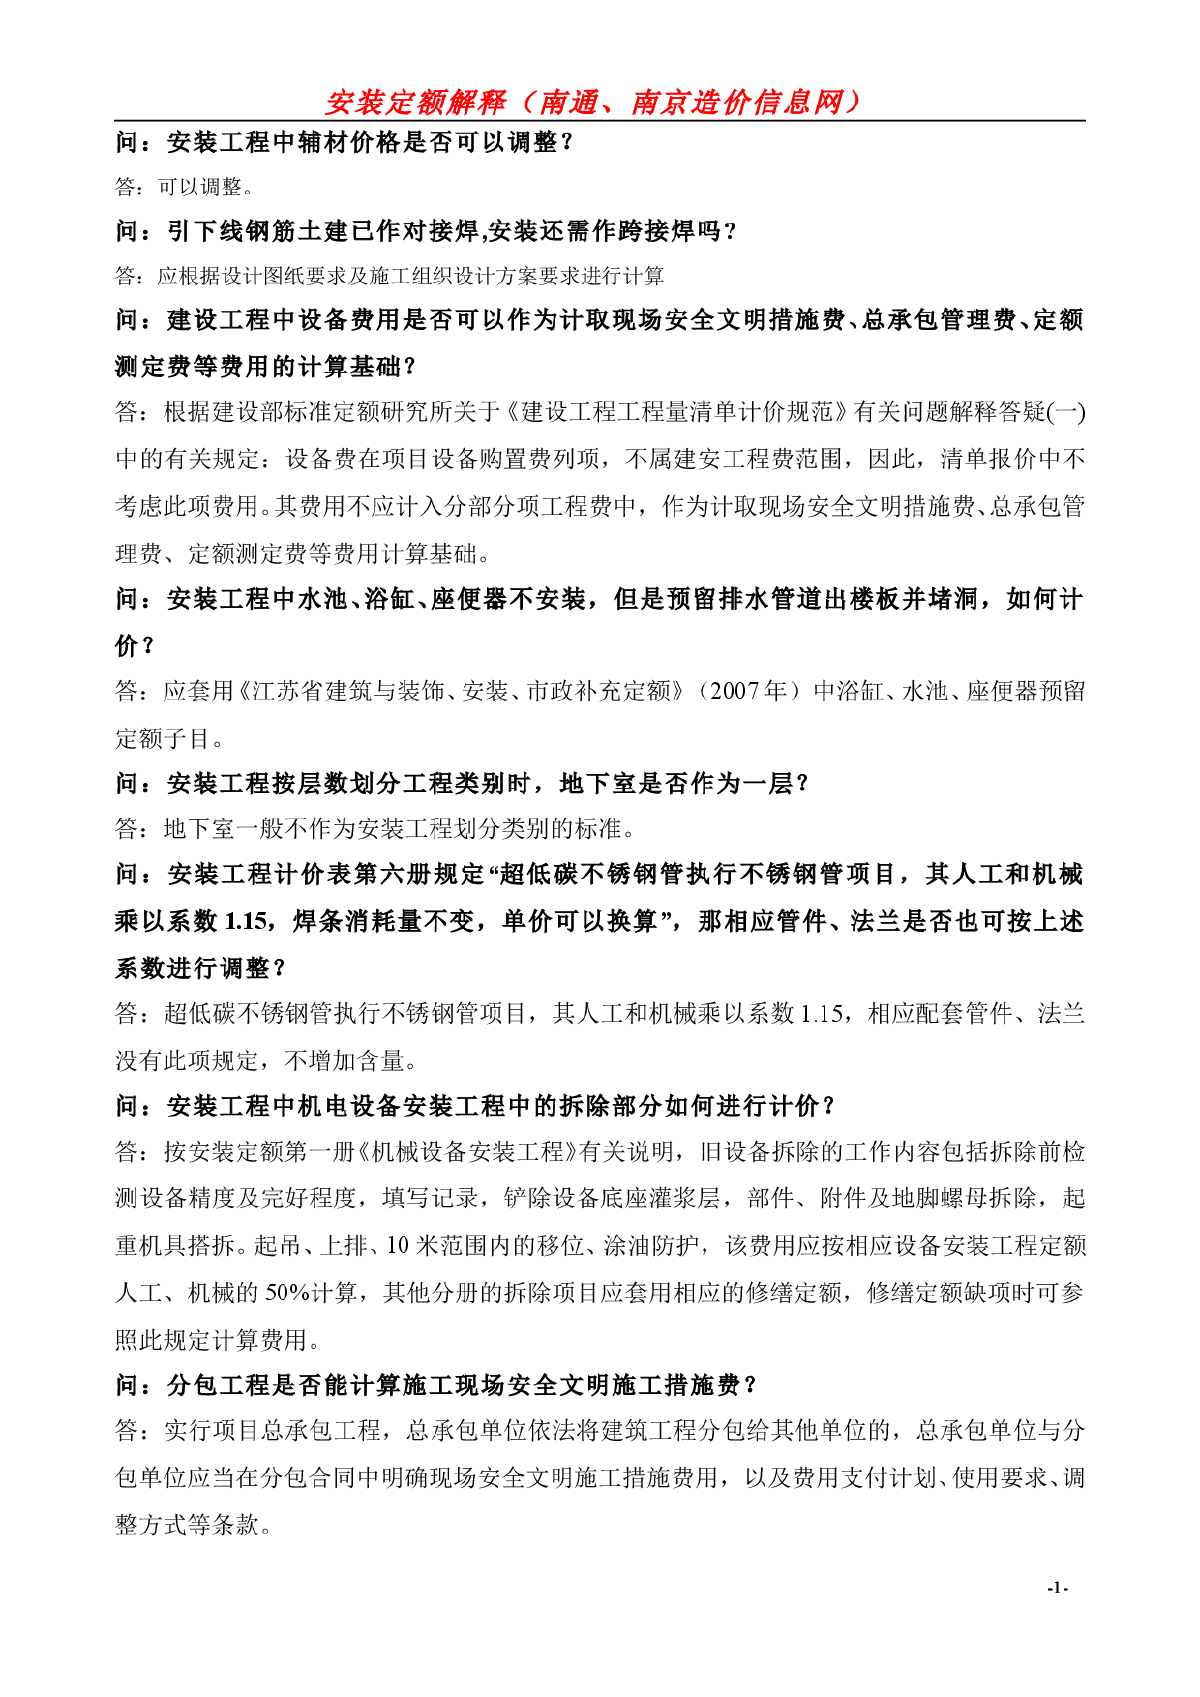 [江苏]2014年安装工程计价定额答疑(37页)